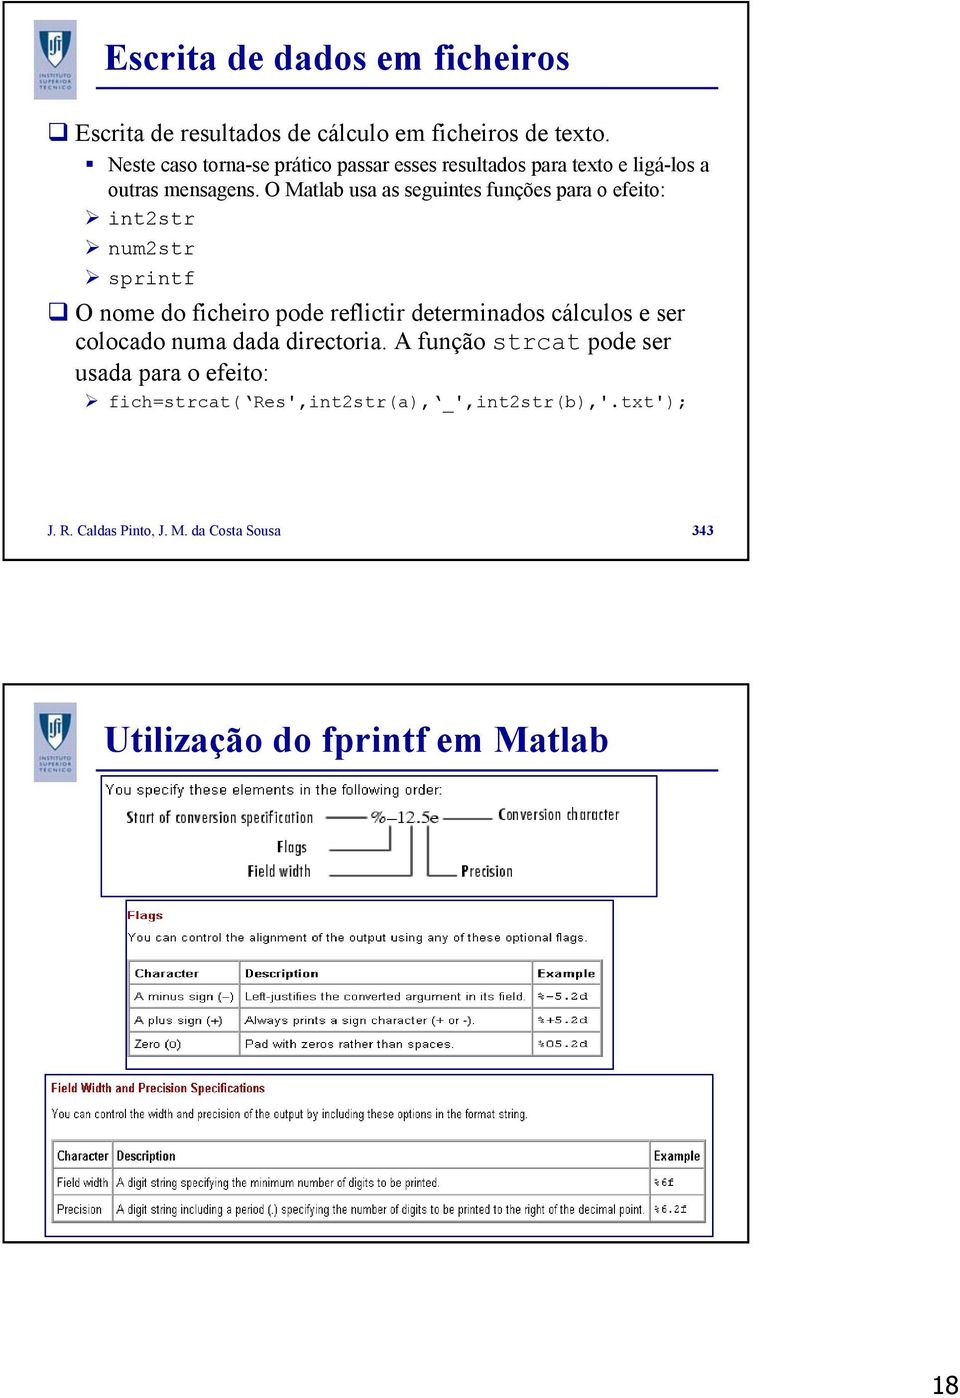 O Matlab usa as seguintes funções para o efeito: int2str num2str sprintf O nome do ficheiro pode reflictir determinados cálculos e ser